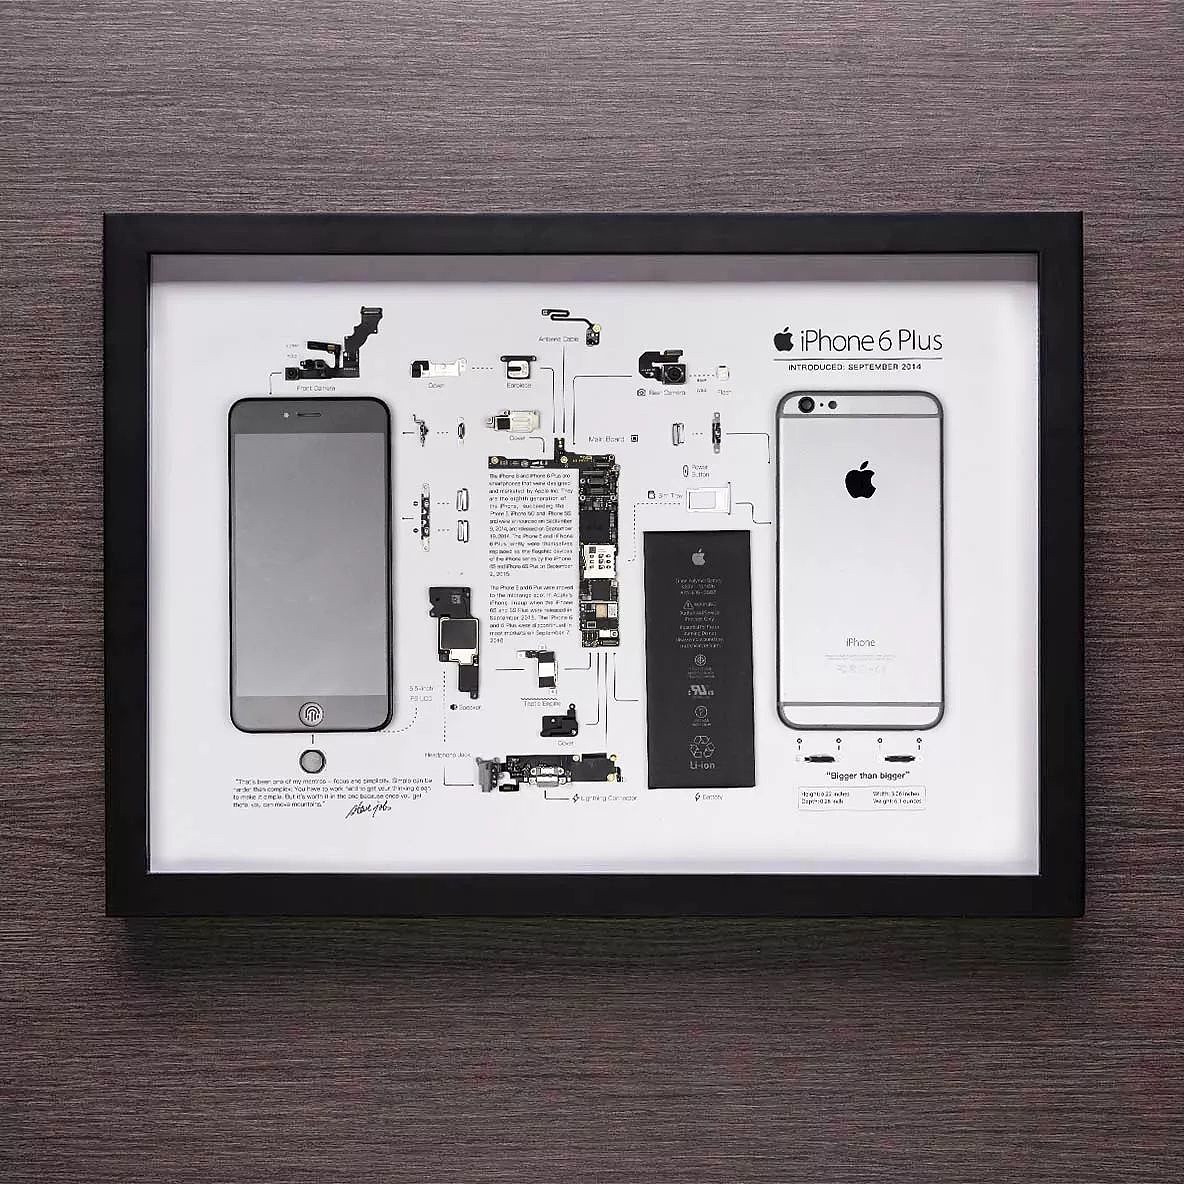 换种角度欣赏 iPhone 6 Plus，工作室 Grid Studio 推出该机型拆解艺术相框 - 4